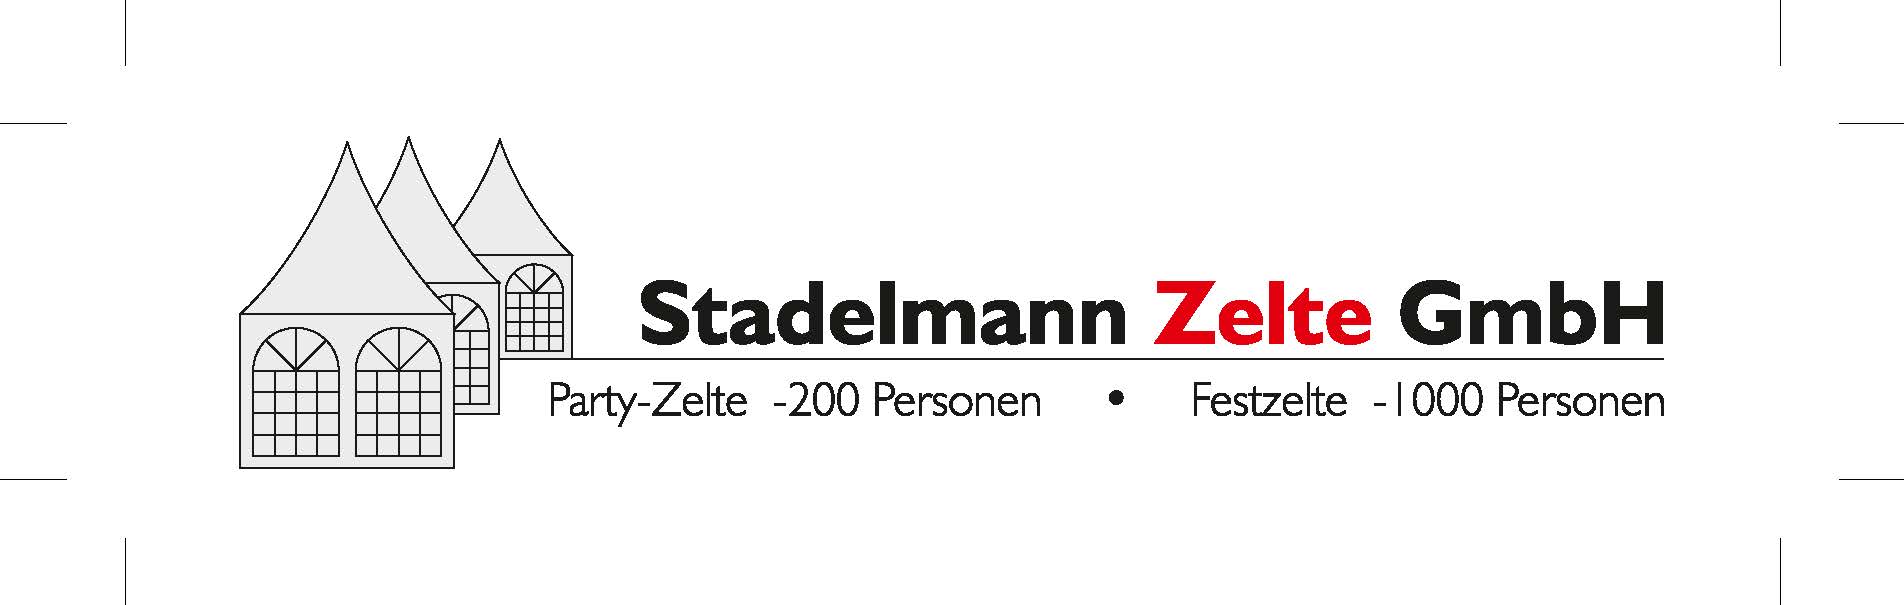 Logo von Stadelmann Zelte. Der Link führt zur Webseite http://www.zeltegmbh.ch/ in neuem Tab.